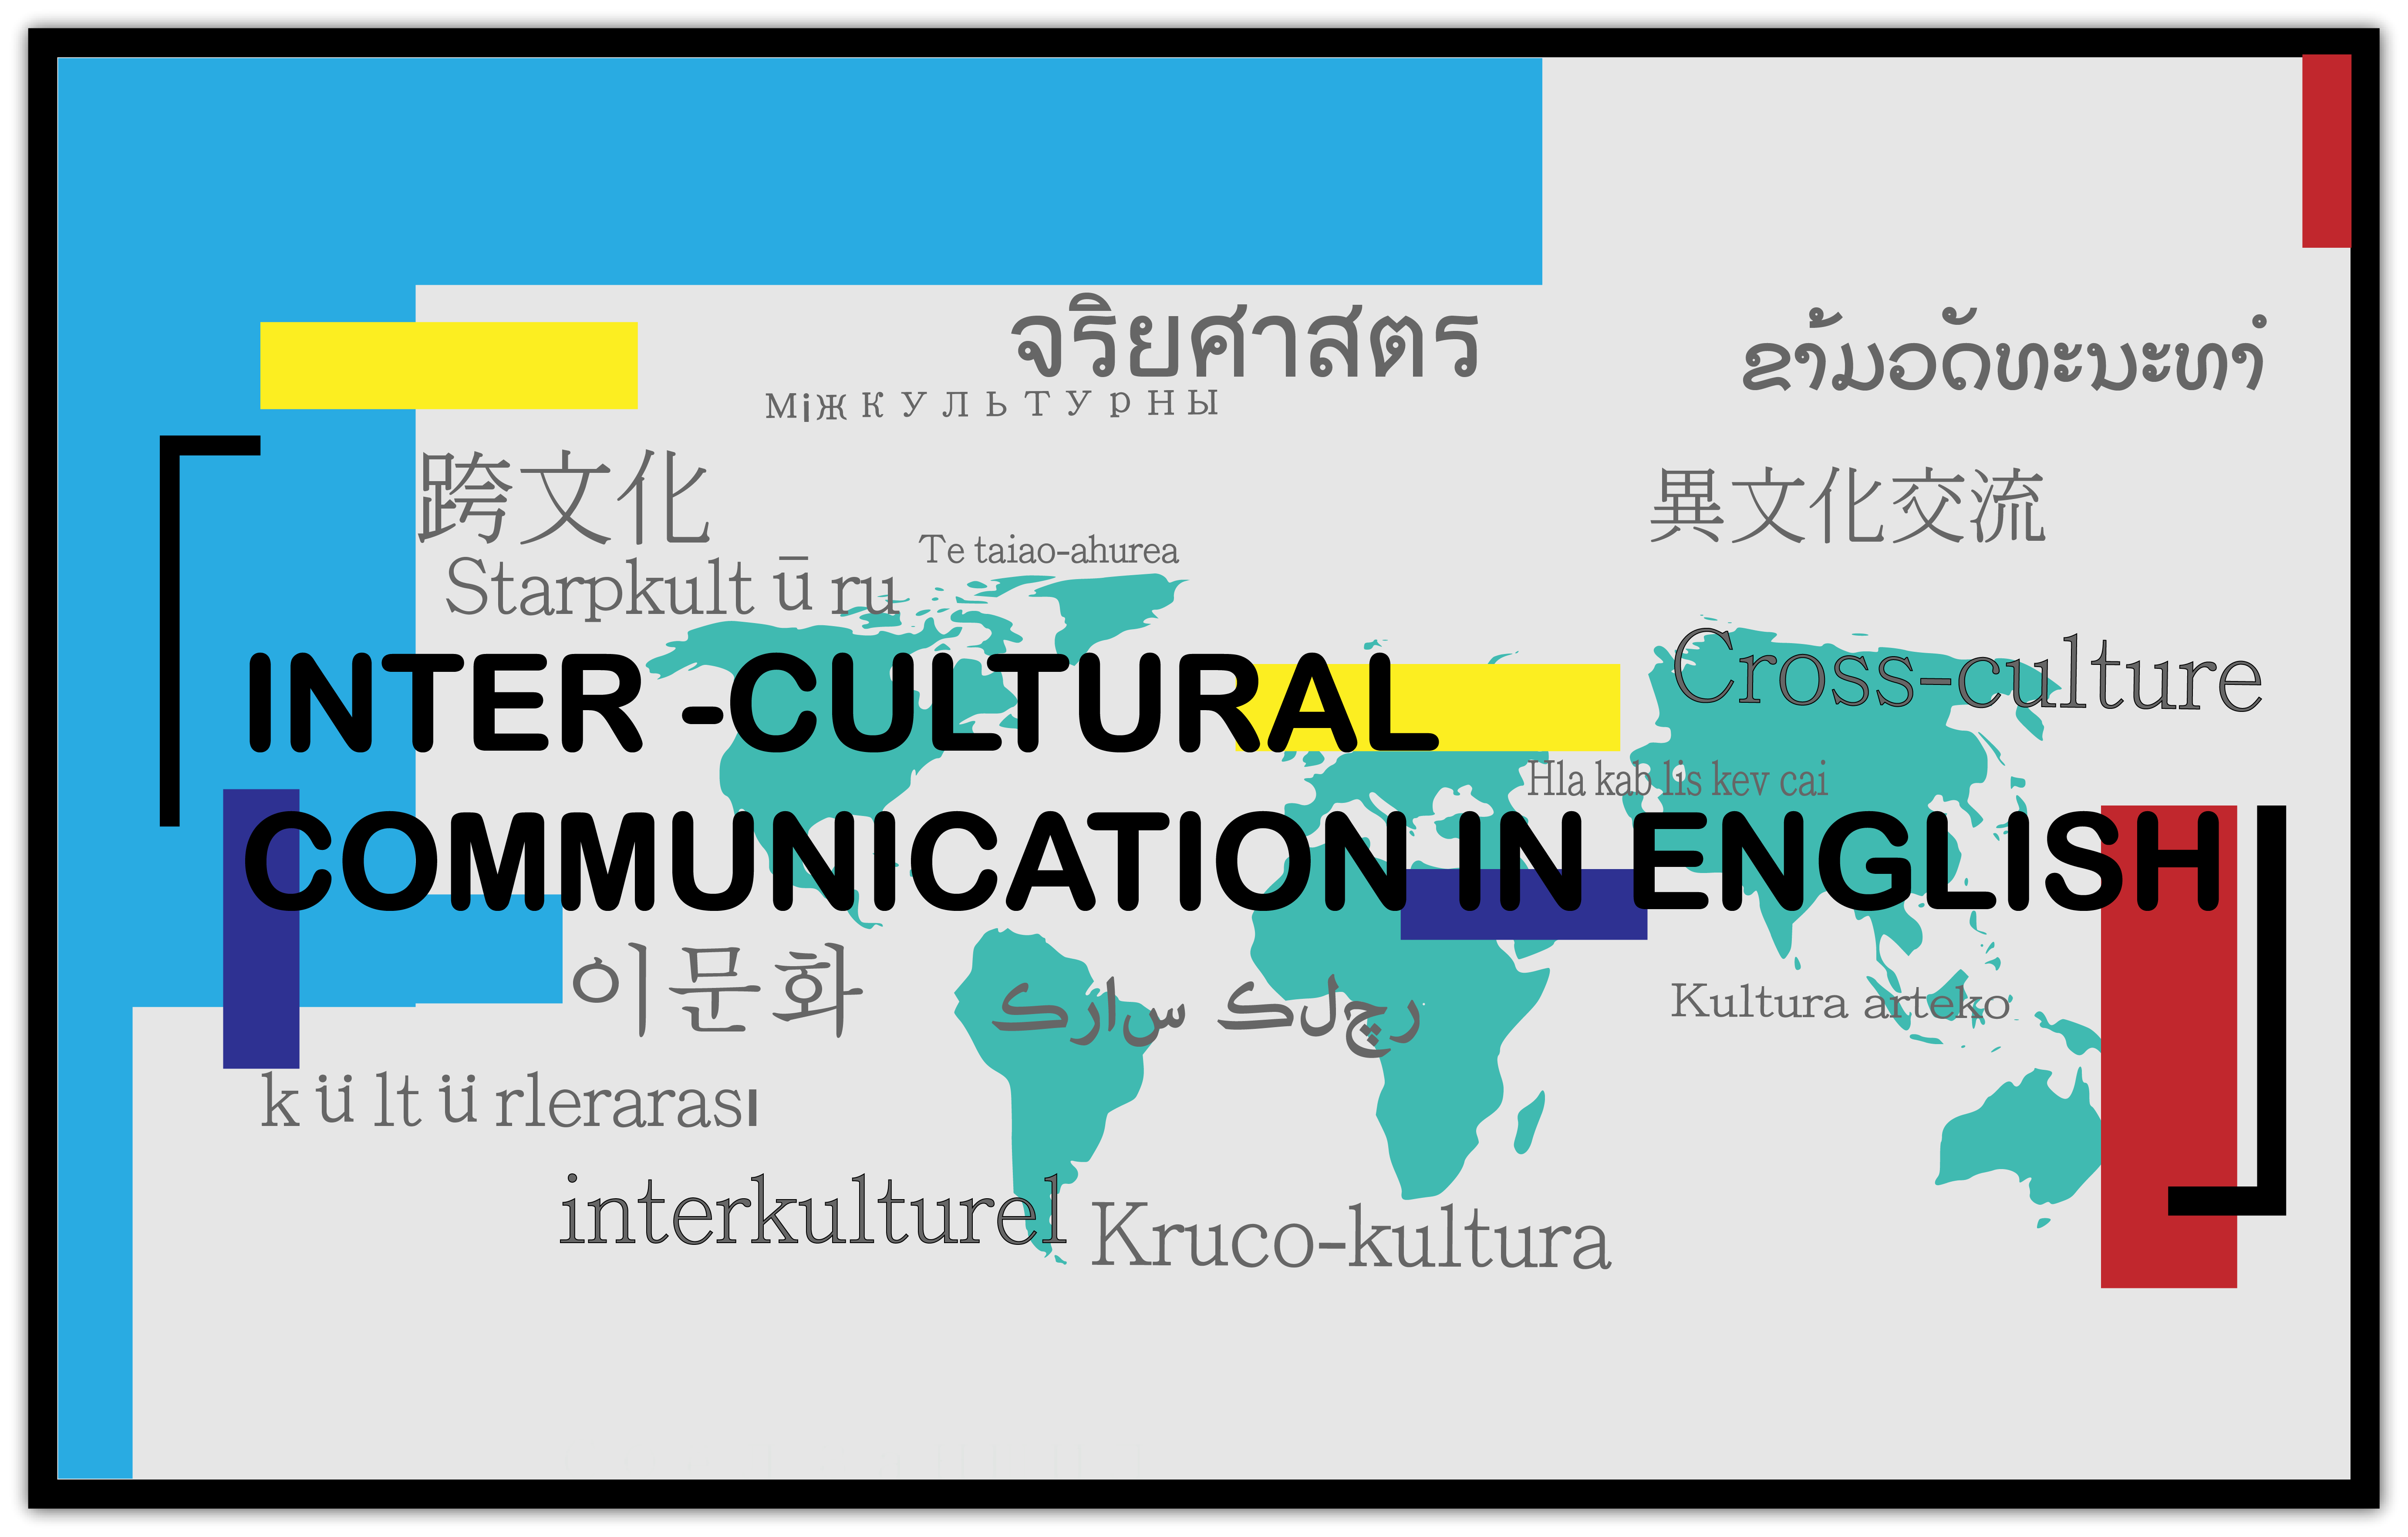 跨文化英語溝通